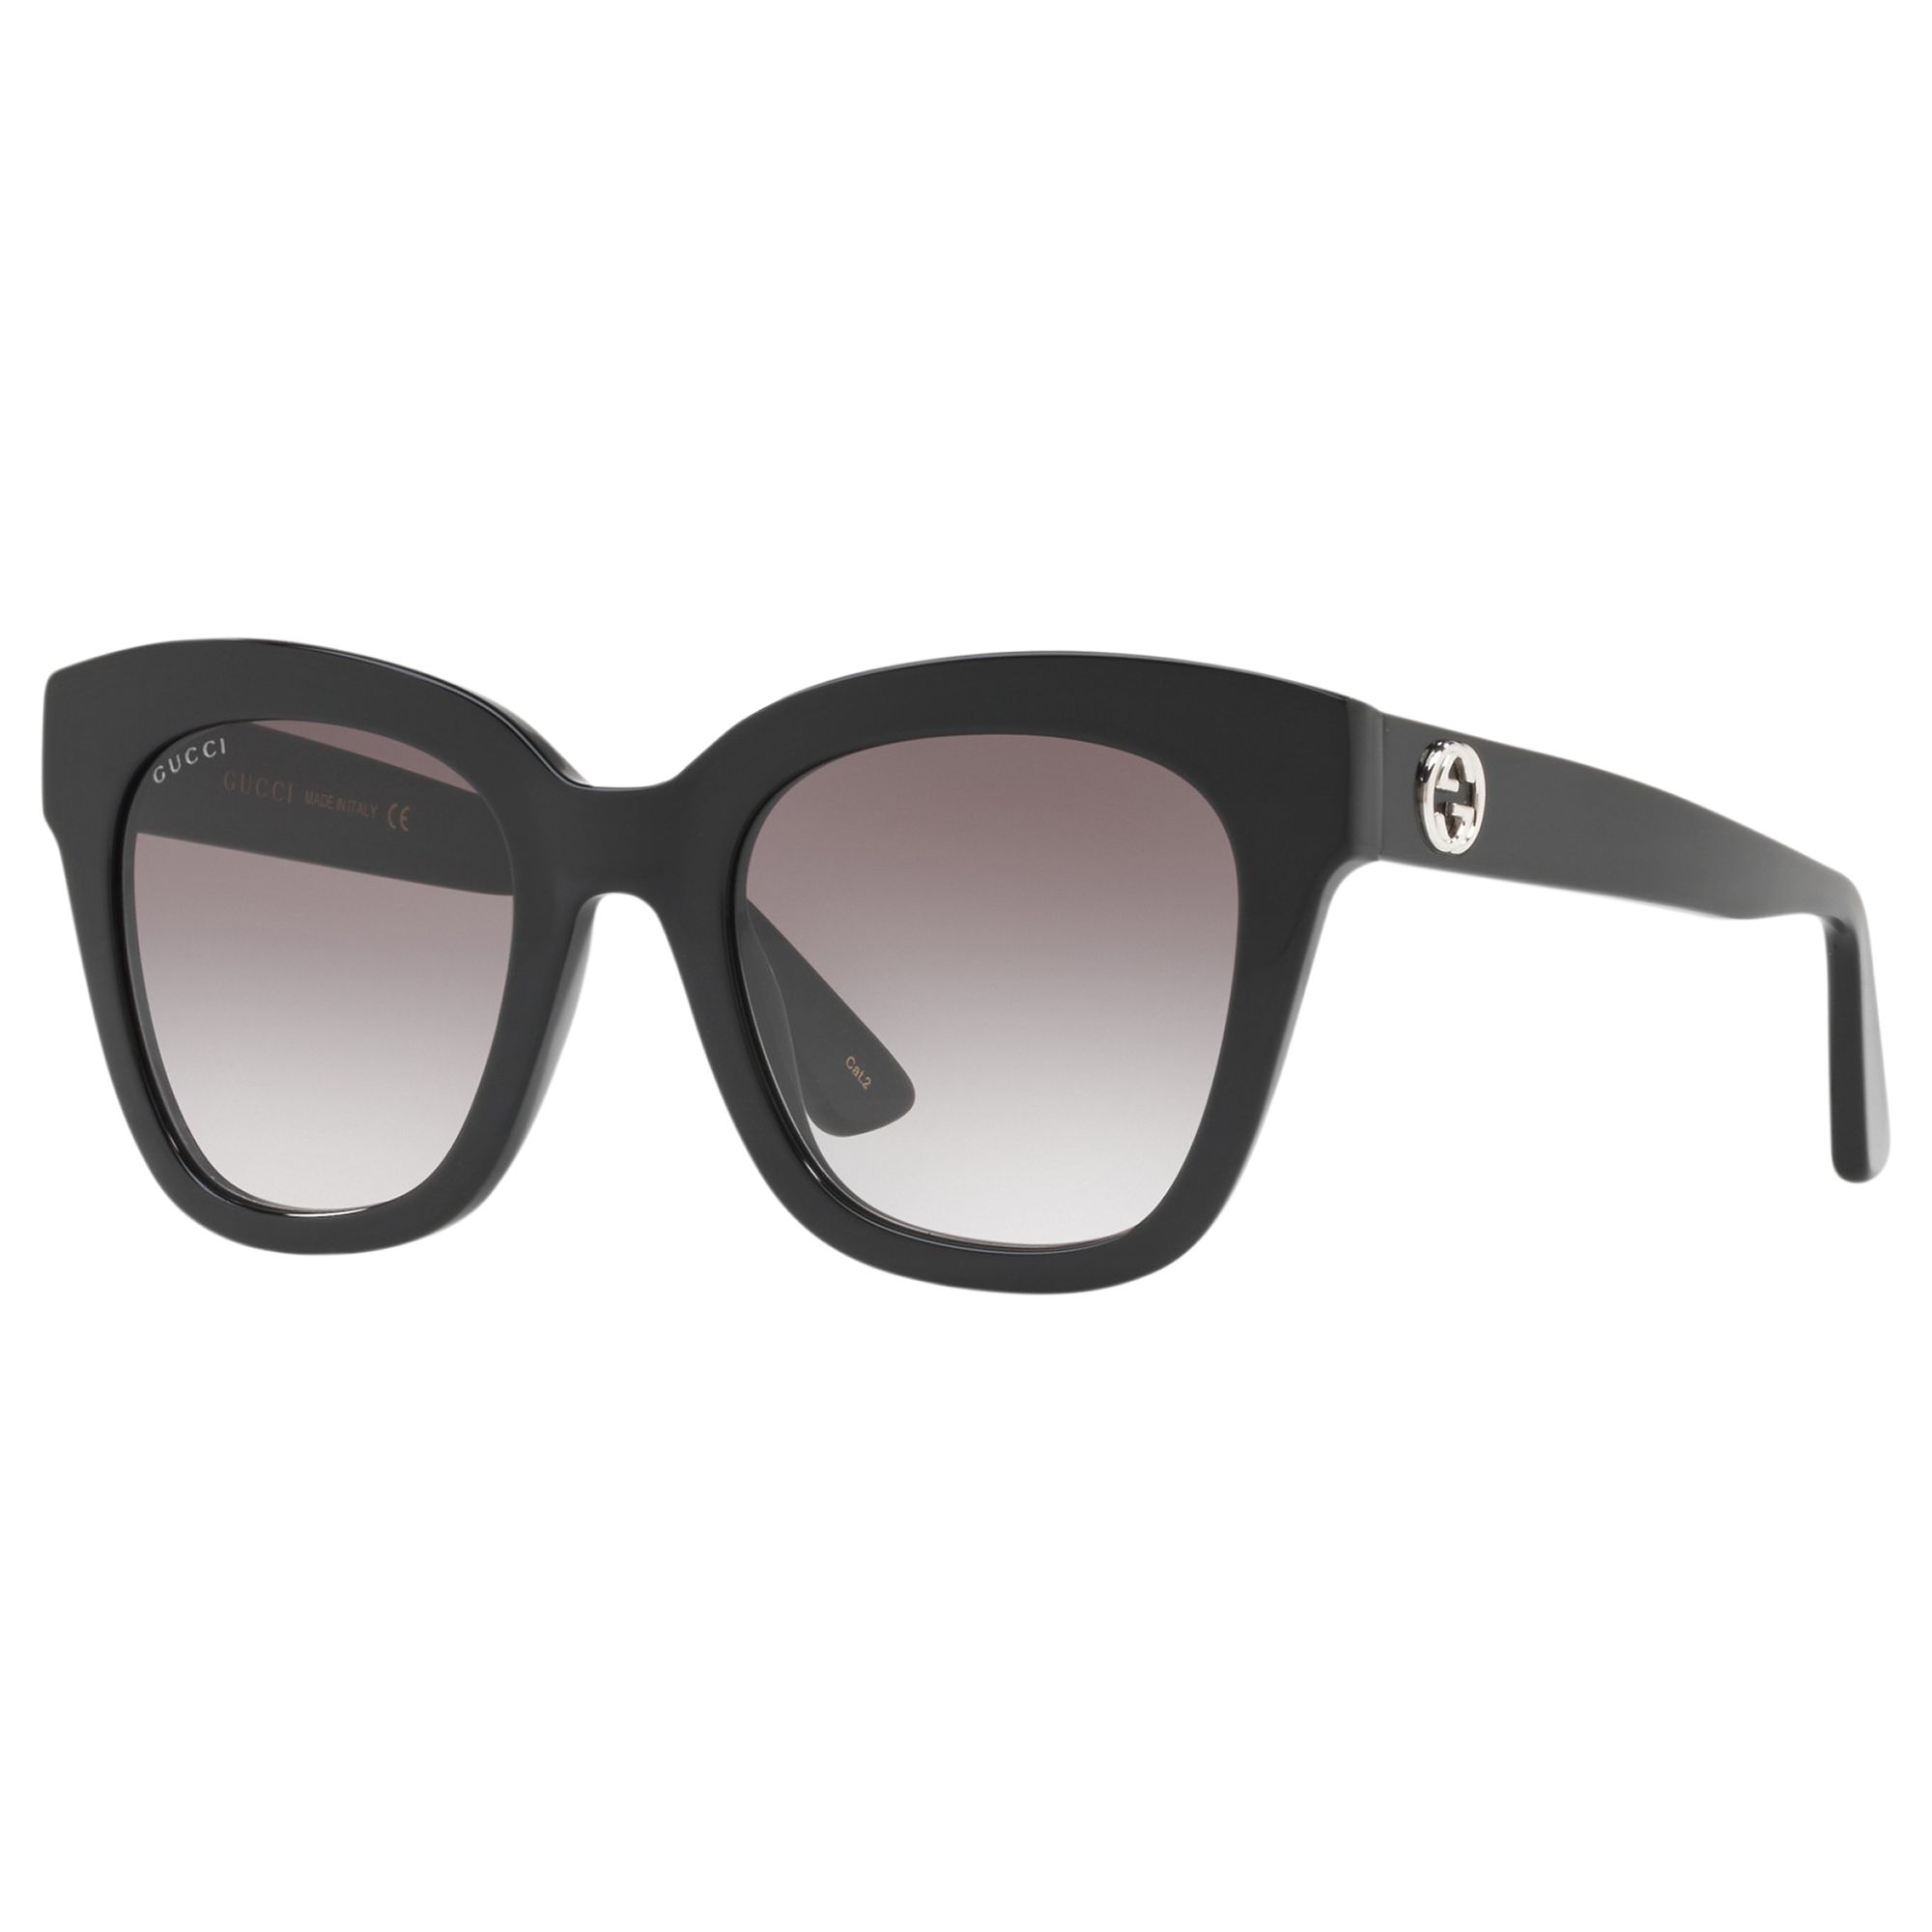 Gucci GG0029S Women's Square Sunglasses, Black/Grey Gradient at John ...